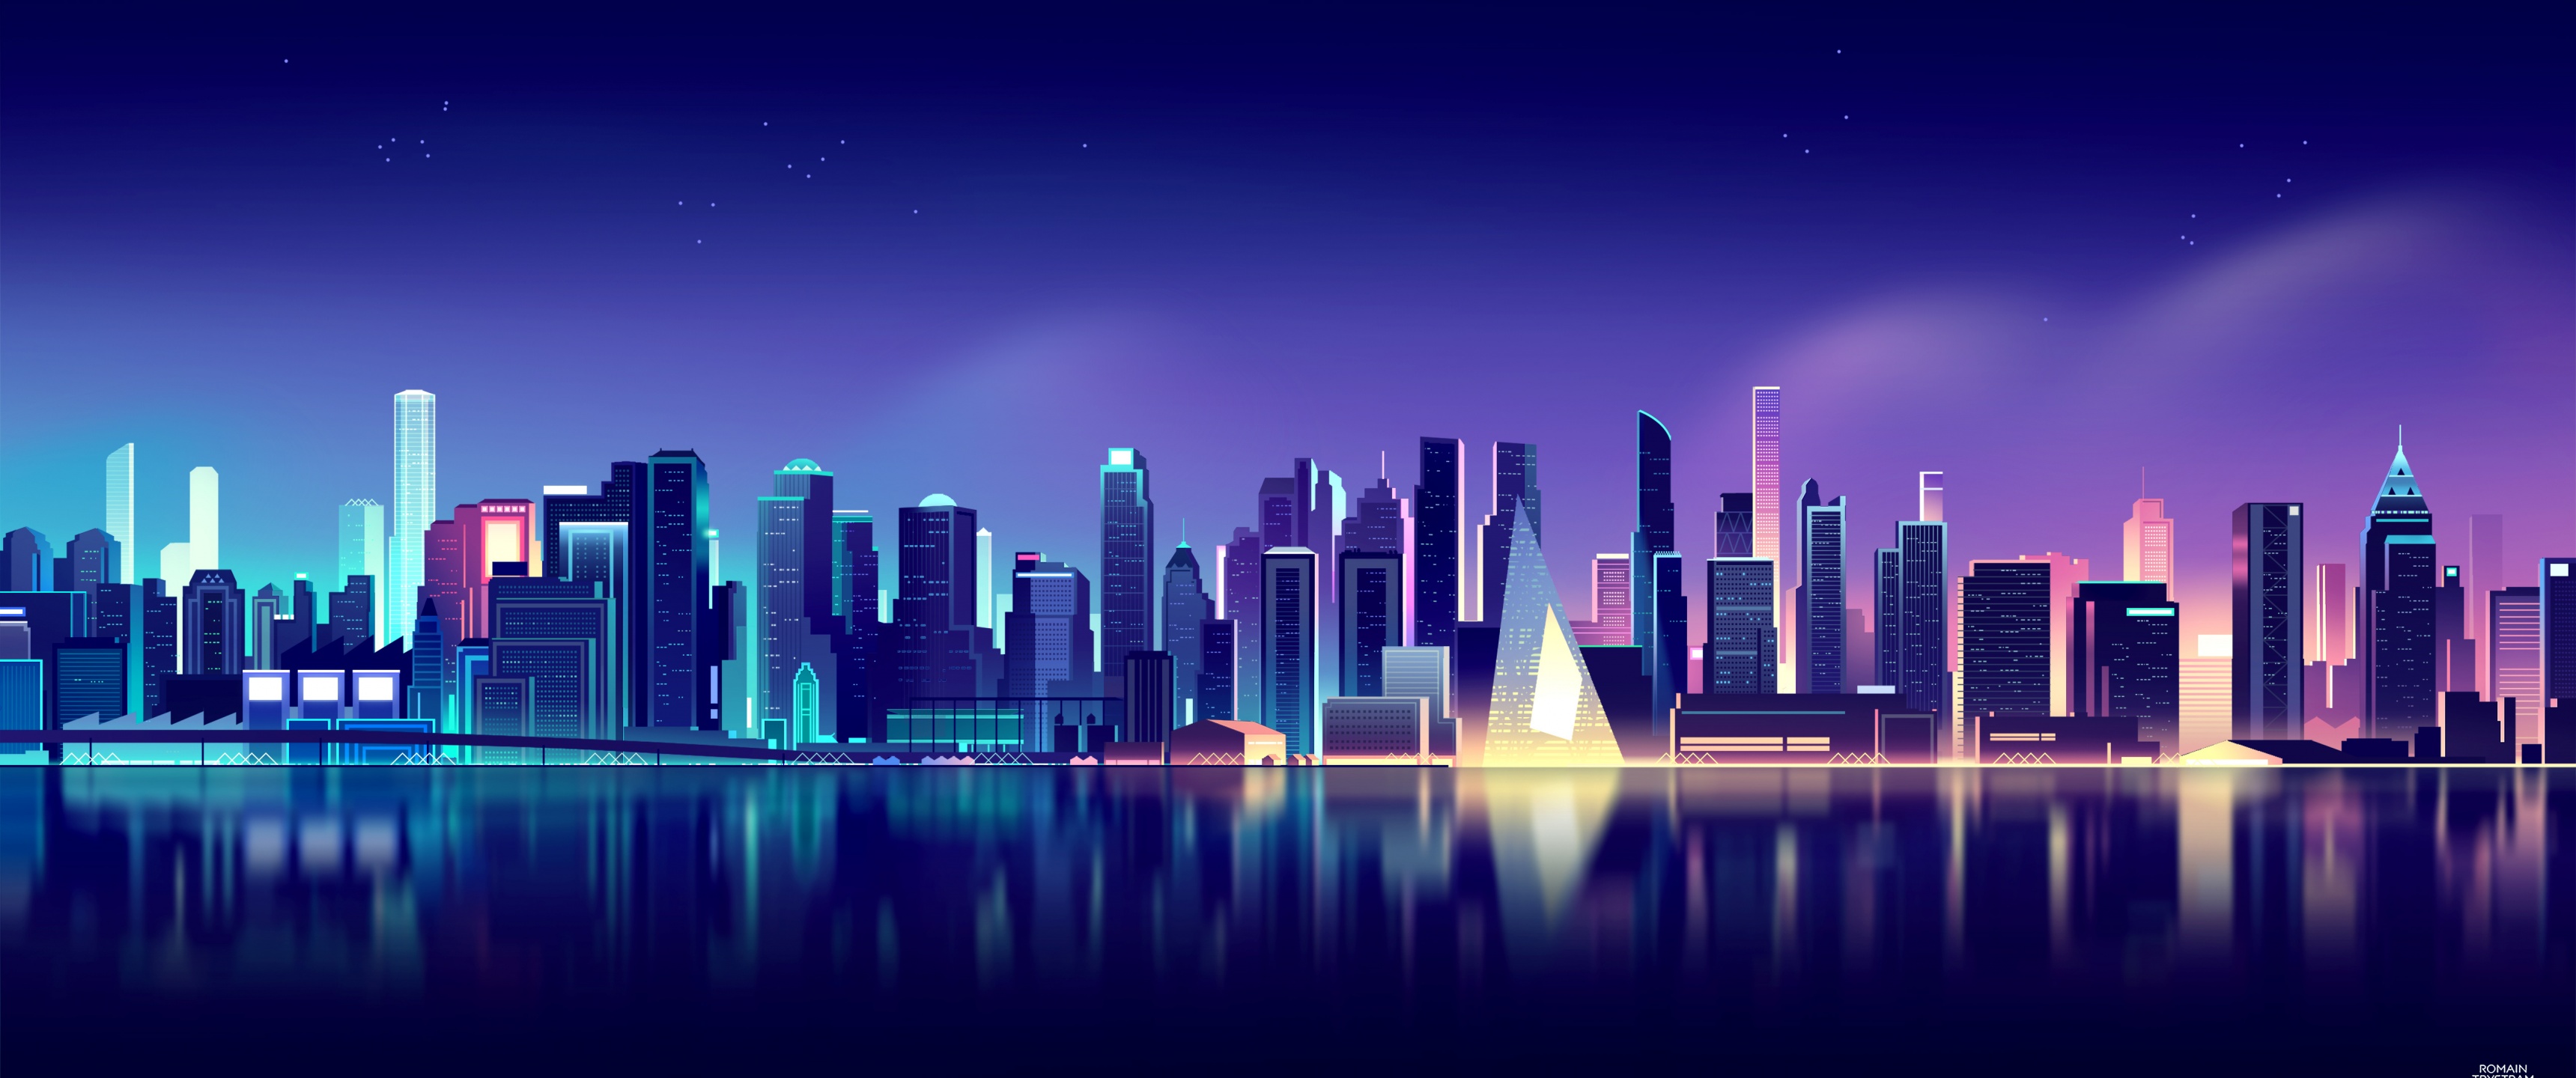 Hãy khám phá vẻ đẹp đáng kinh ngạc của thành phố đêm qua hình nền tuyệt đẹp này. Bạn sẽ cảm nhận được sự sống động, ánh đèn sáng chói và nhịp độ tấp nập của thành phố đêm. Hãy sẵn sàng cho một cuộc hành trình tuyệt vời đến thành phố đêm qua hình nền này nhé!